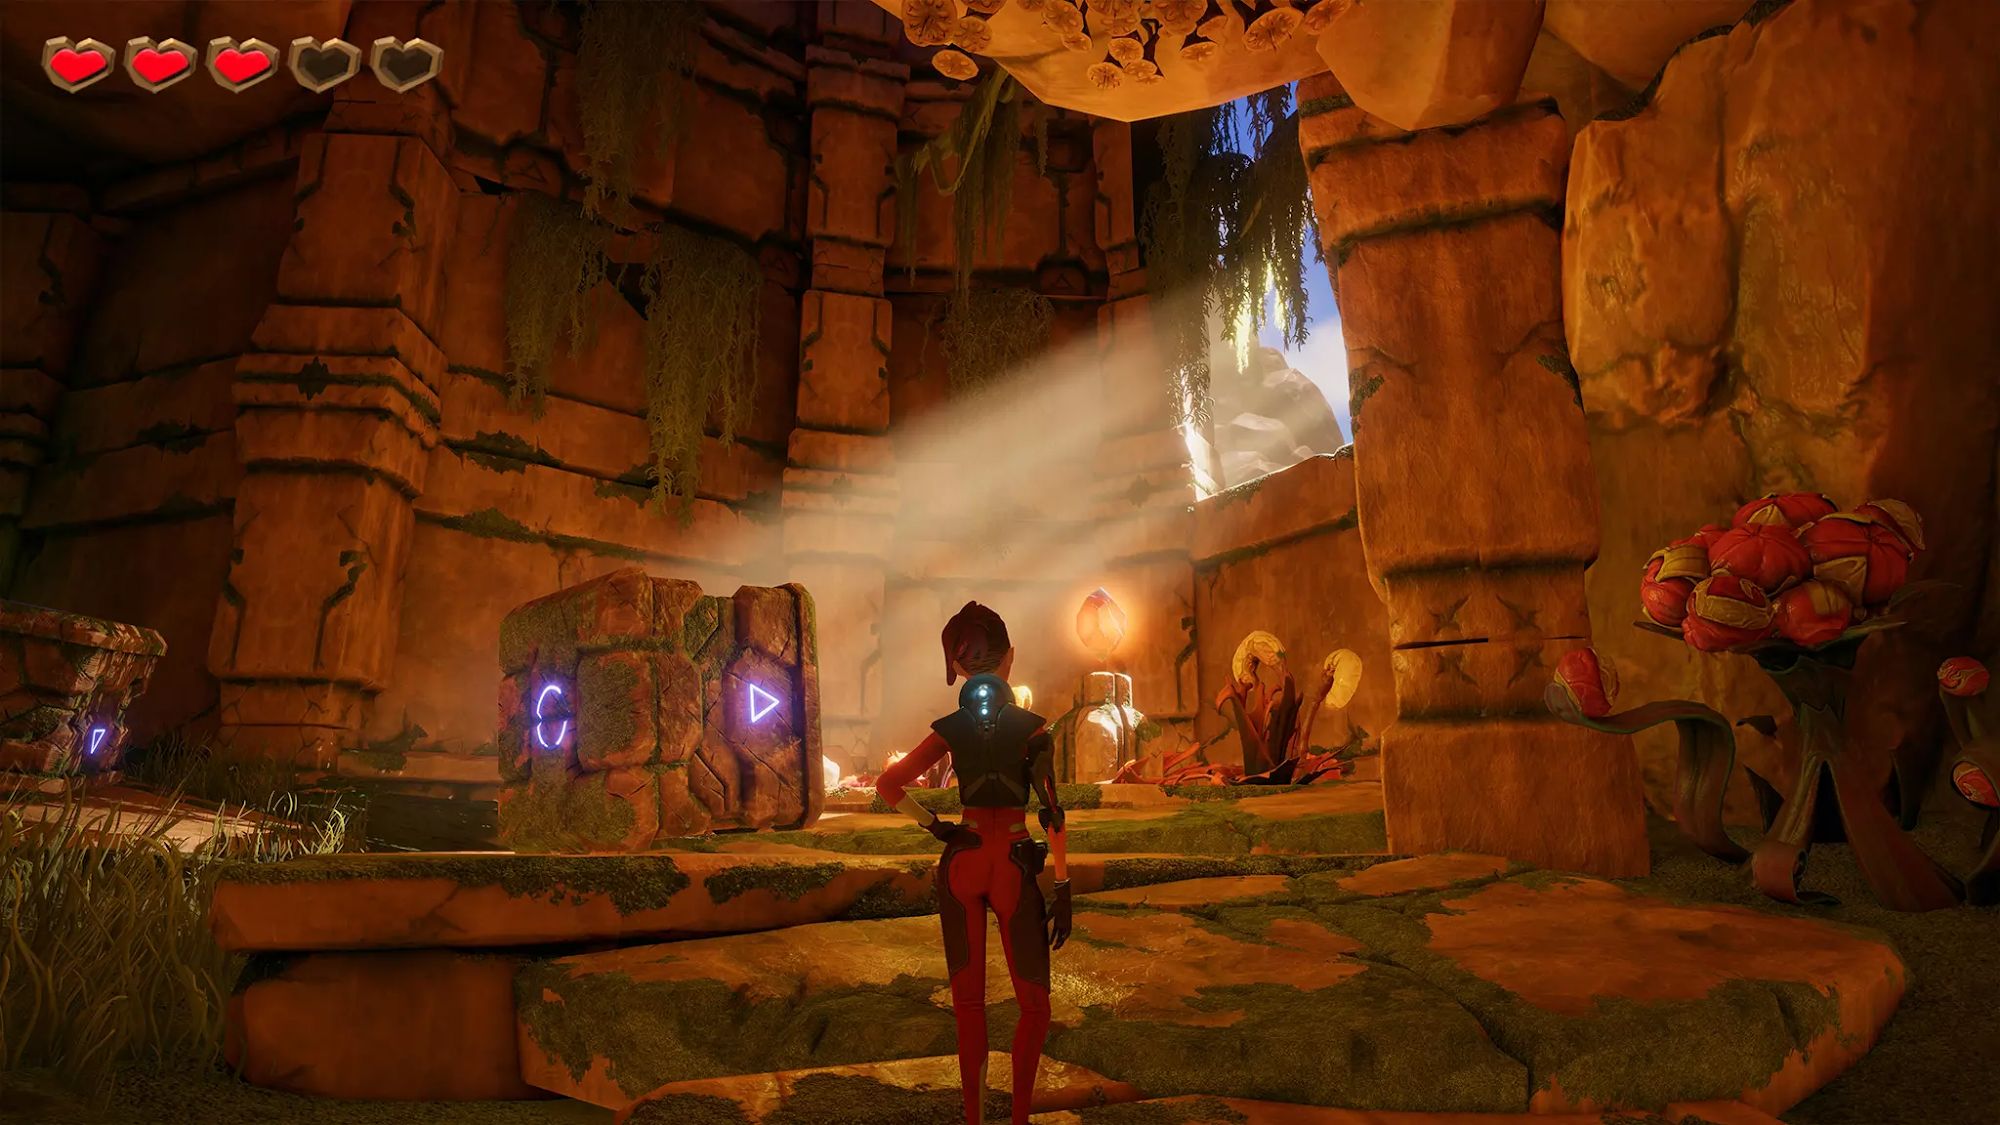 Explorer Ellen 3D - Android game screenshots.